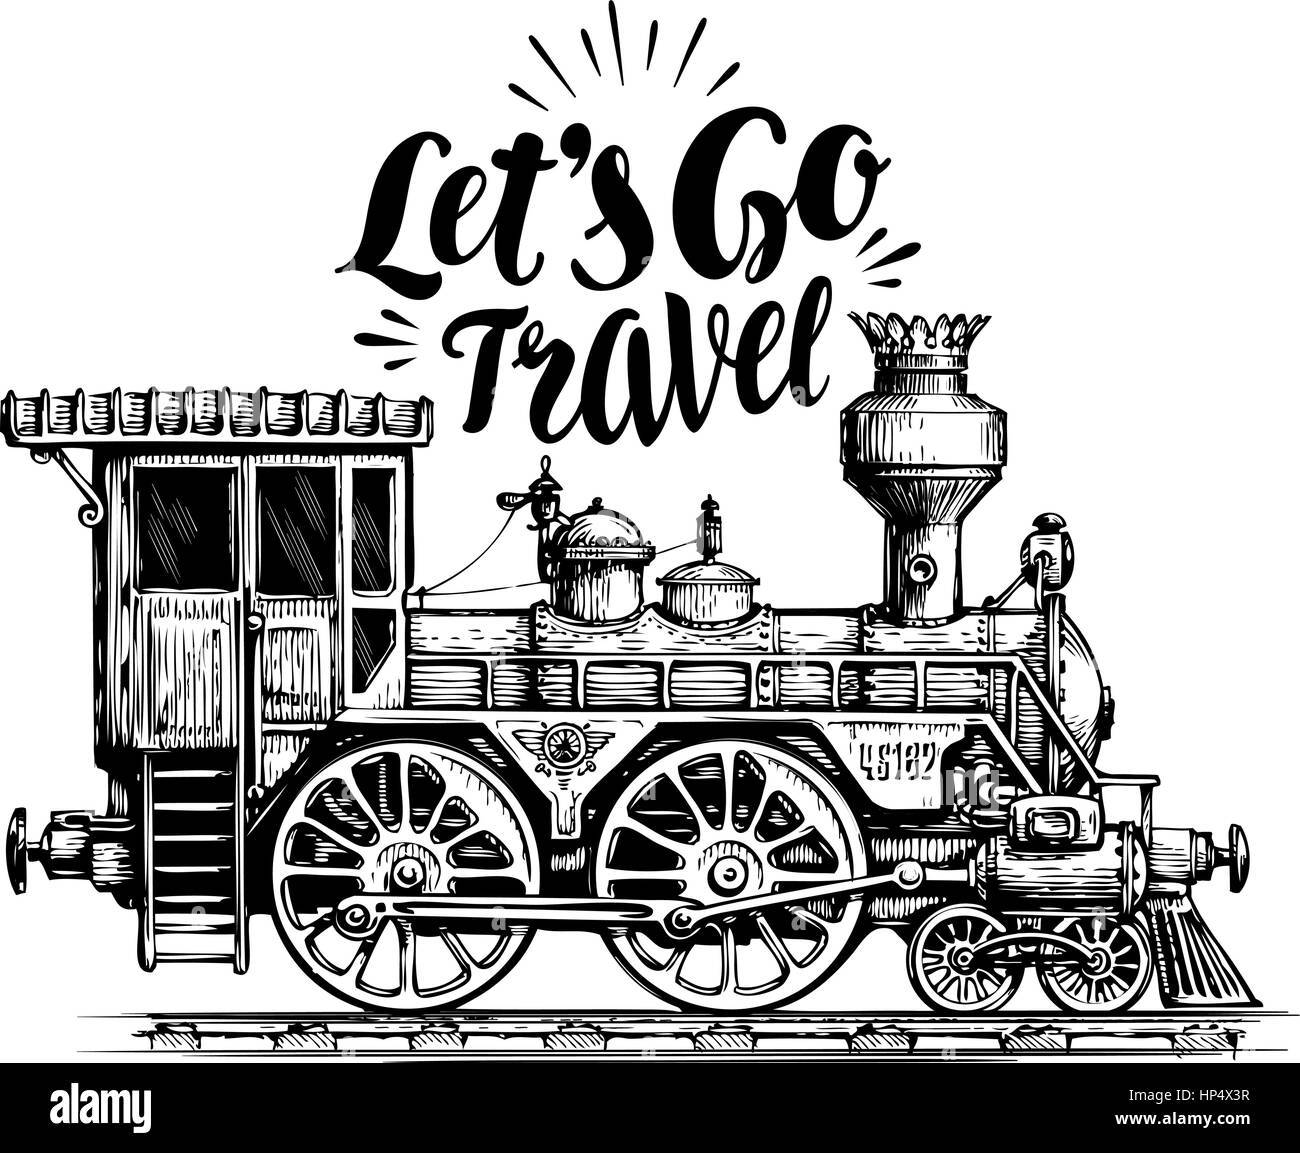 Hand drawn vintage locomotive, train à vapeur, le transport. Moteur de fer, croquis d'illustration vectorielle Illustration de Vecteur